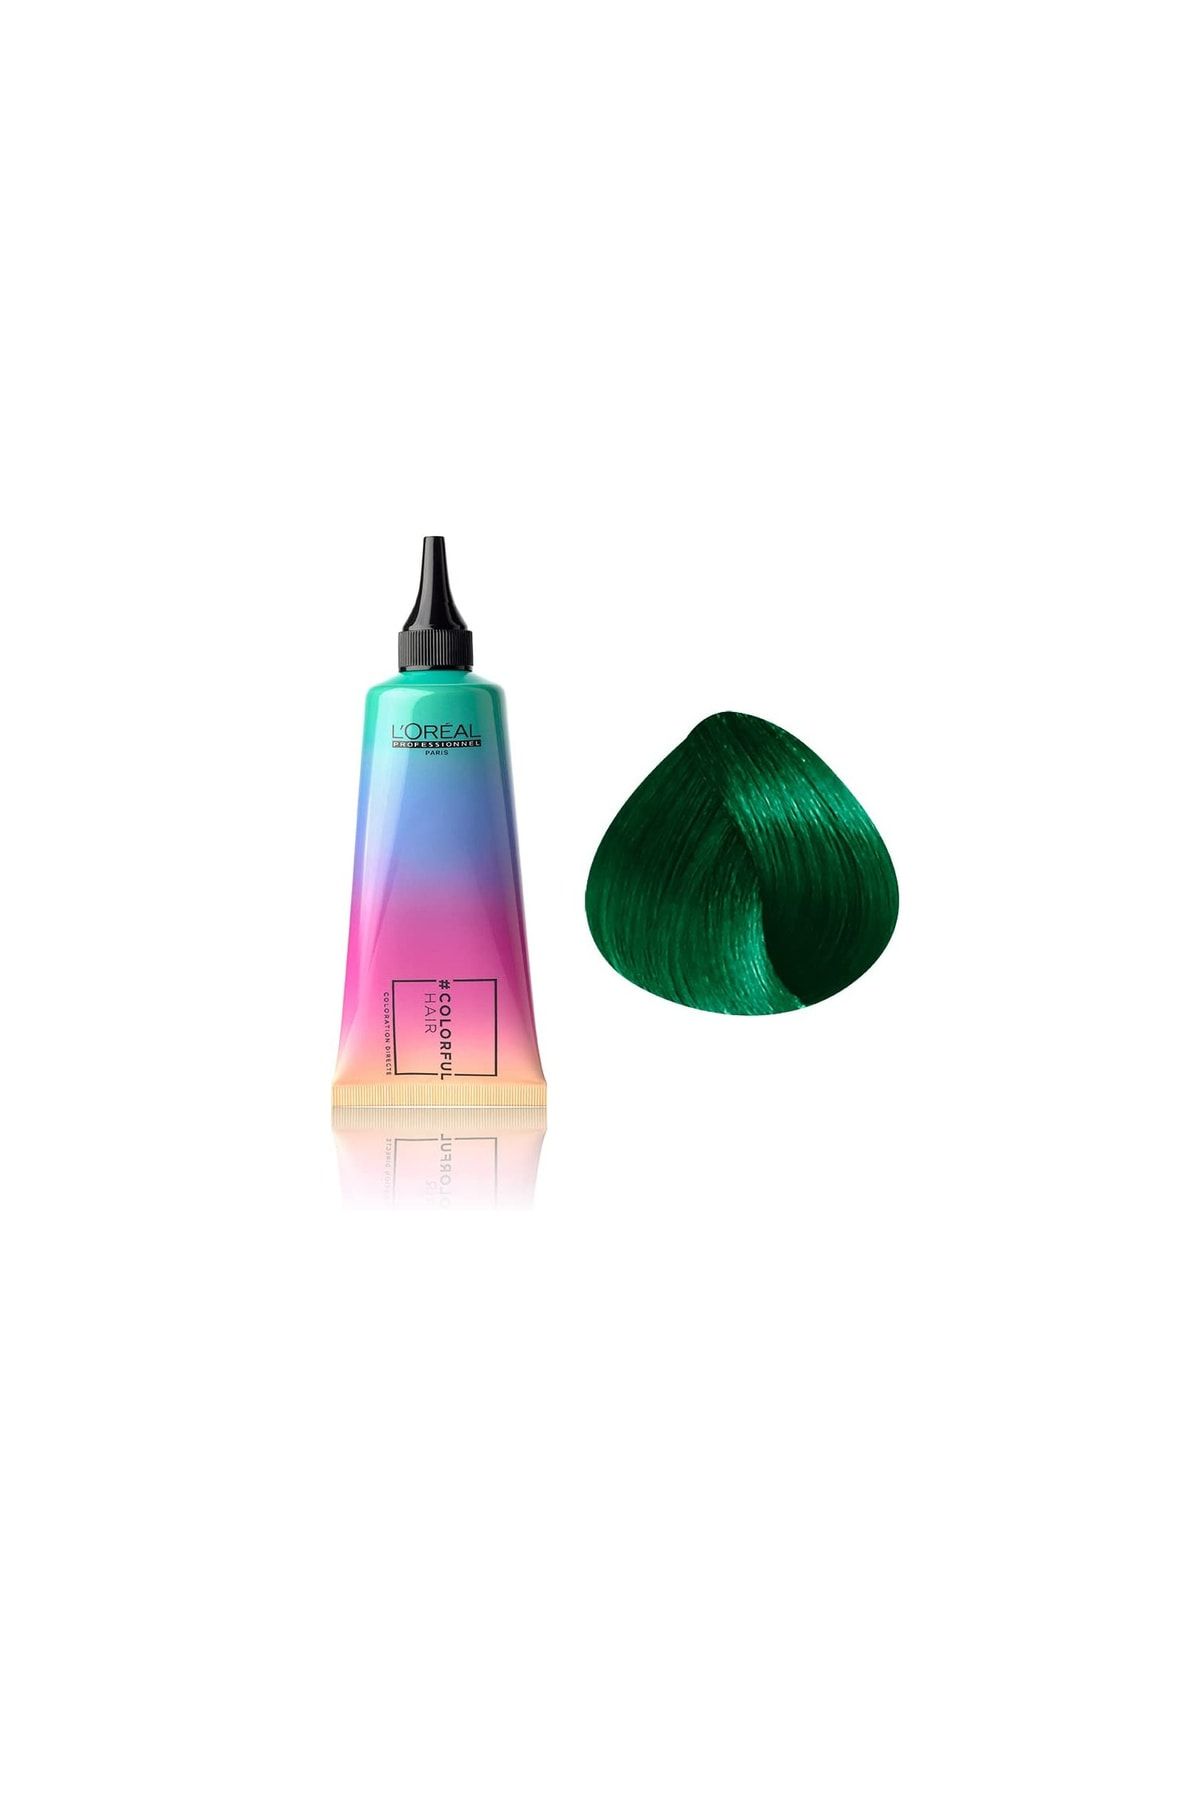 L'oreal Professionnel Colorful Hair Iced Mint Yeşil Belirgin Yarı Kalıcı Amonyaksız Saç Boyası 90ml